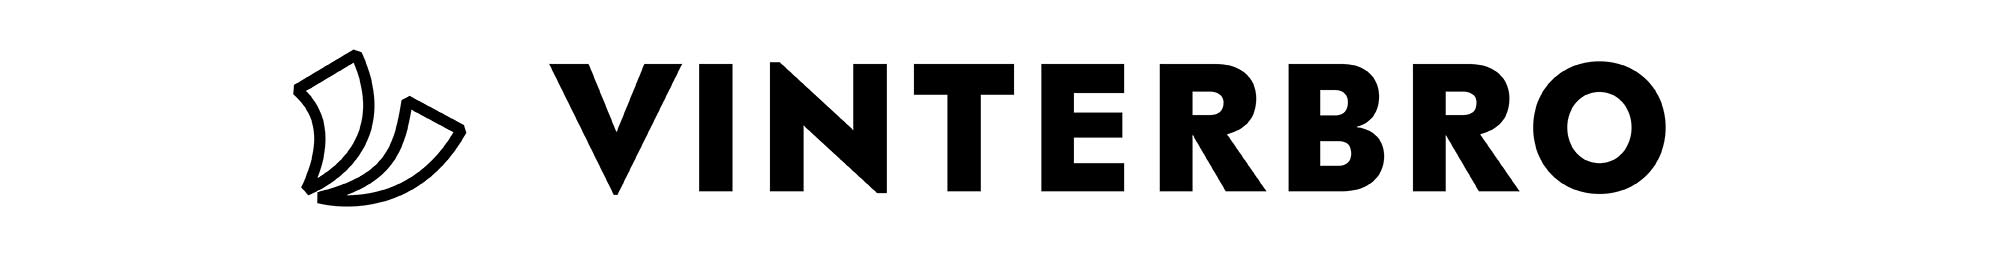 Vinterbro Tagline Main Logo Web